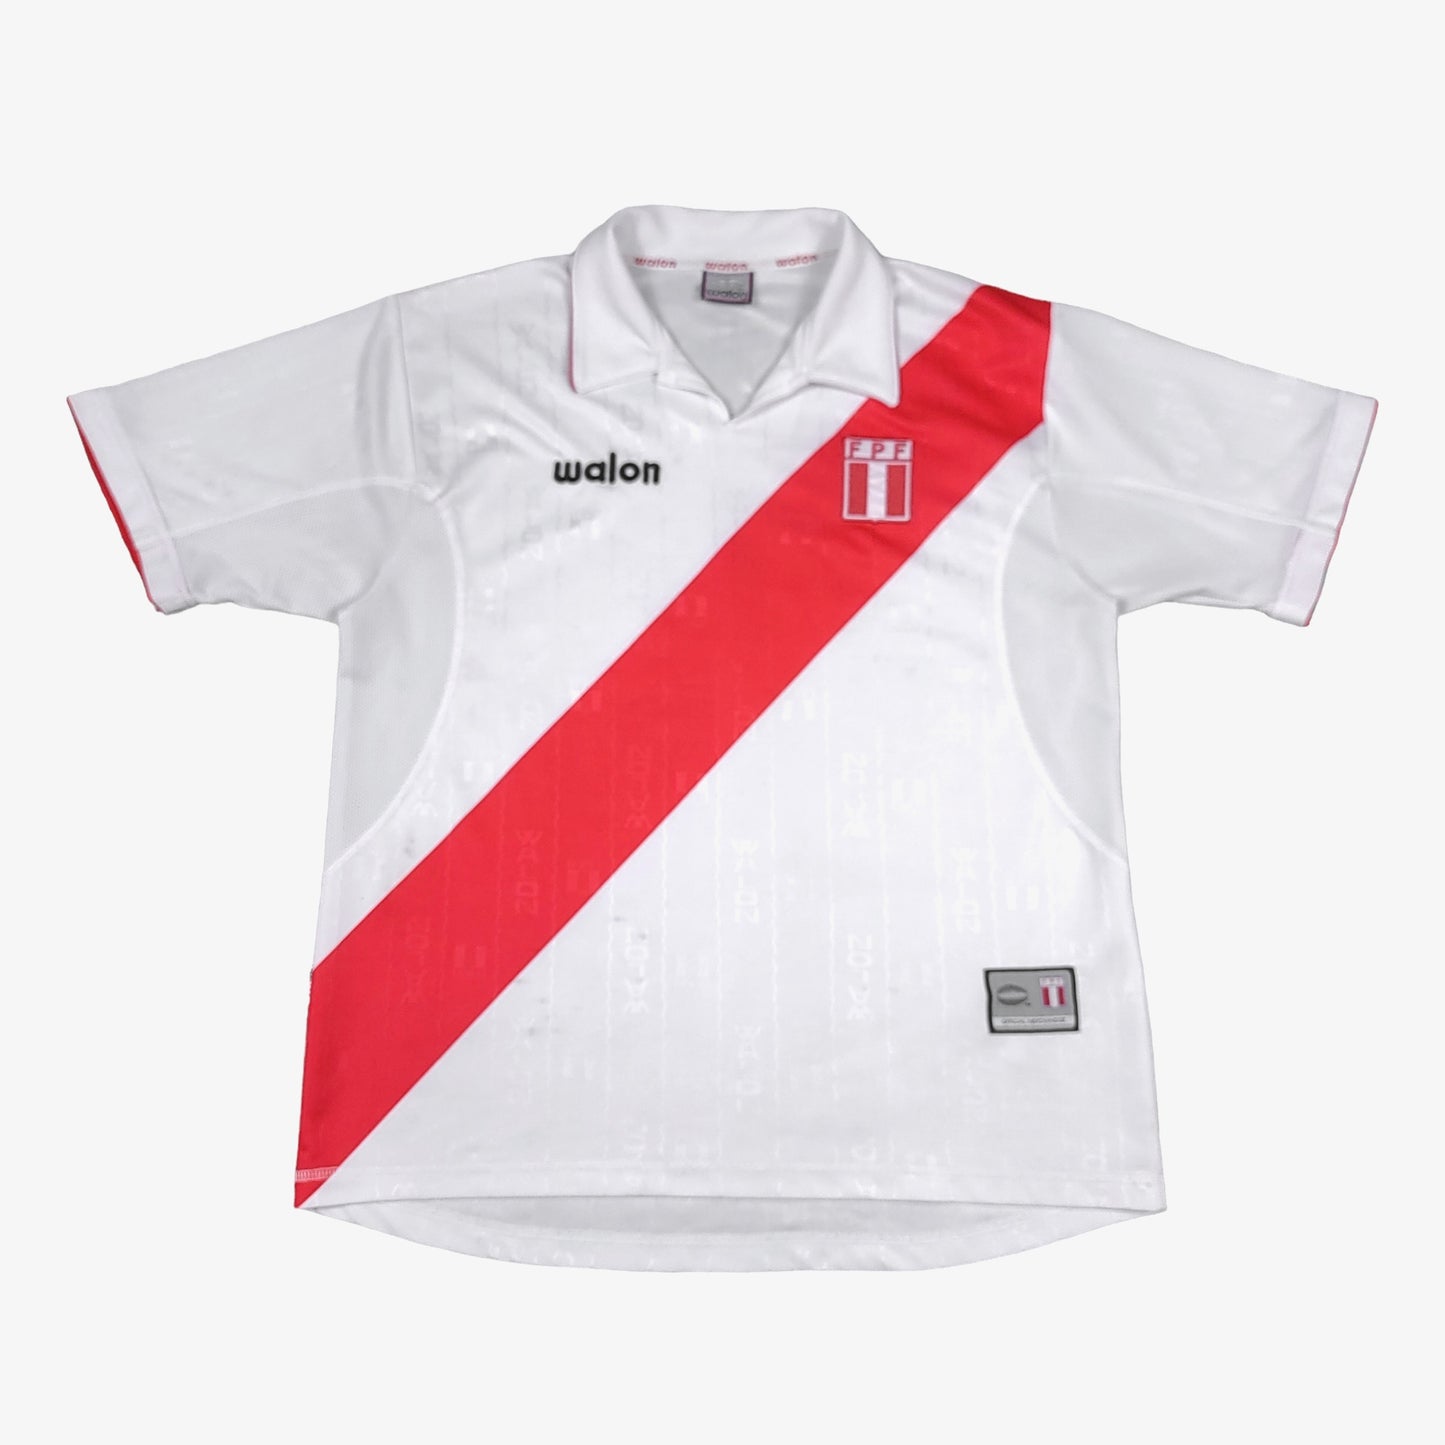 Vintage Peru 2002 Walon Soccer Jersey